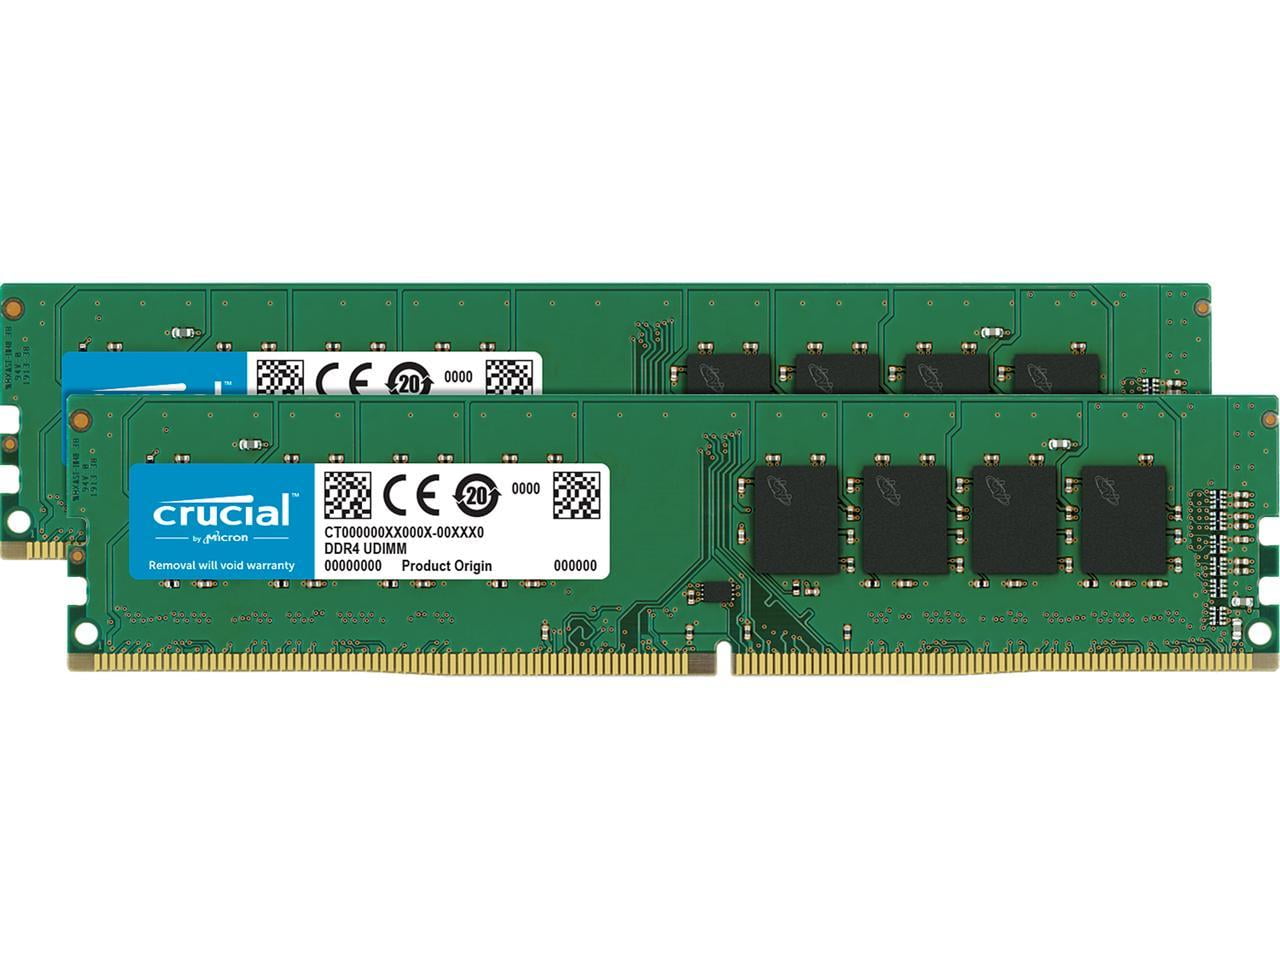 Crucial RAM 16Go Kit (2x8Go) DDR4 2400MHz CL17 Mémoire de Bureau  CT2K8G4DFS824A